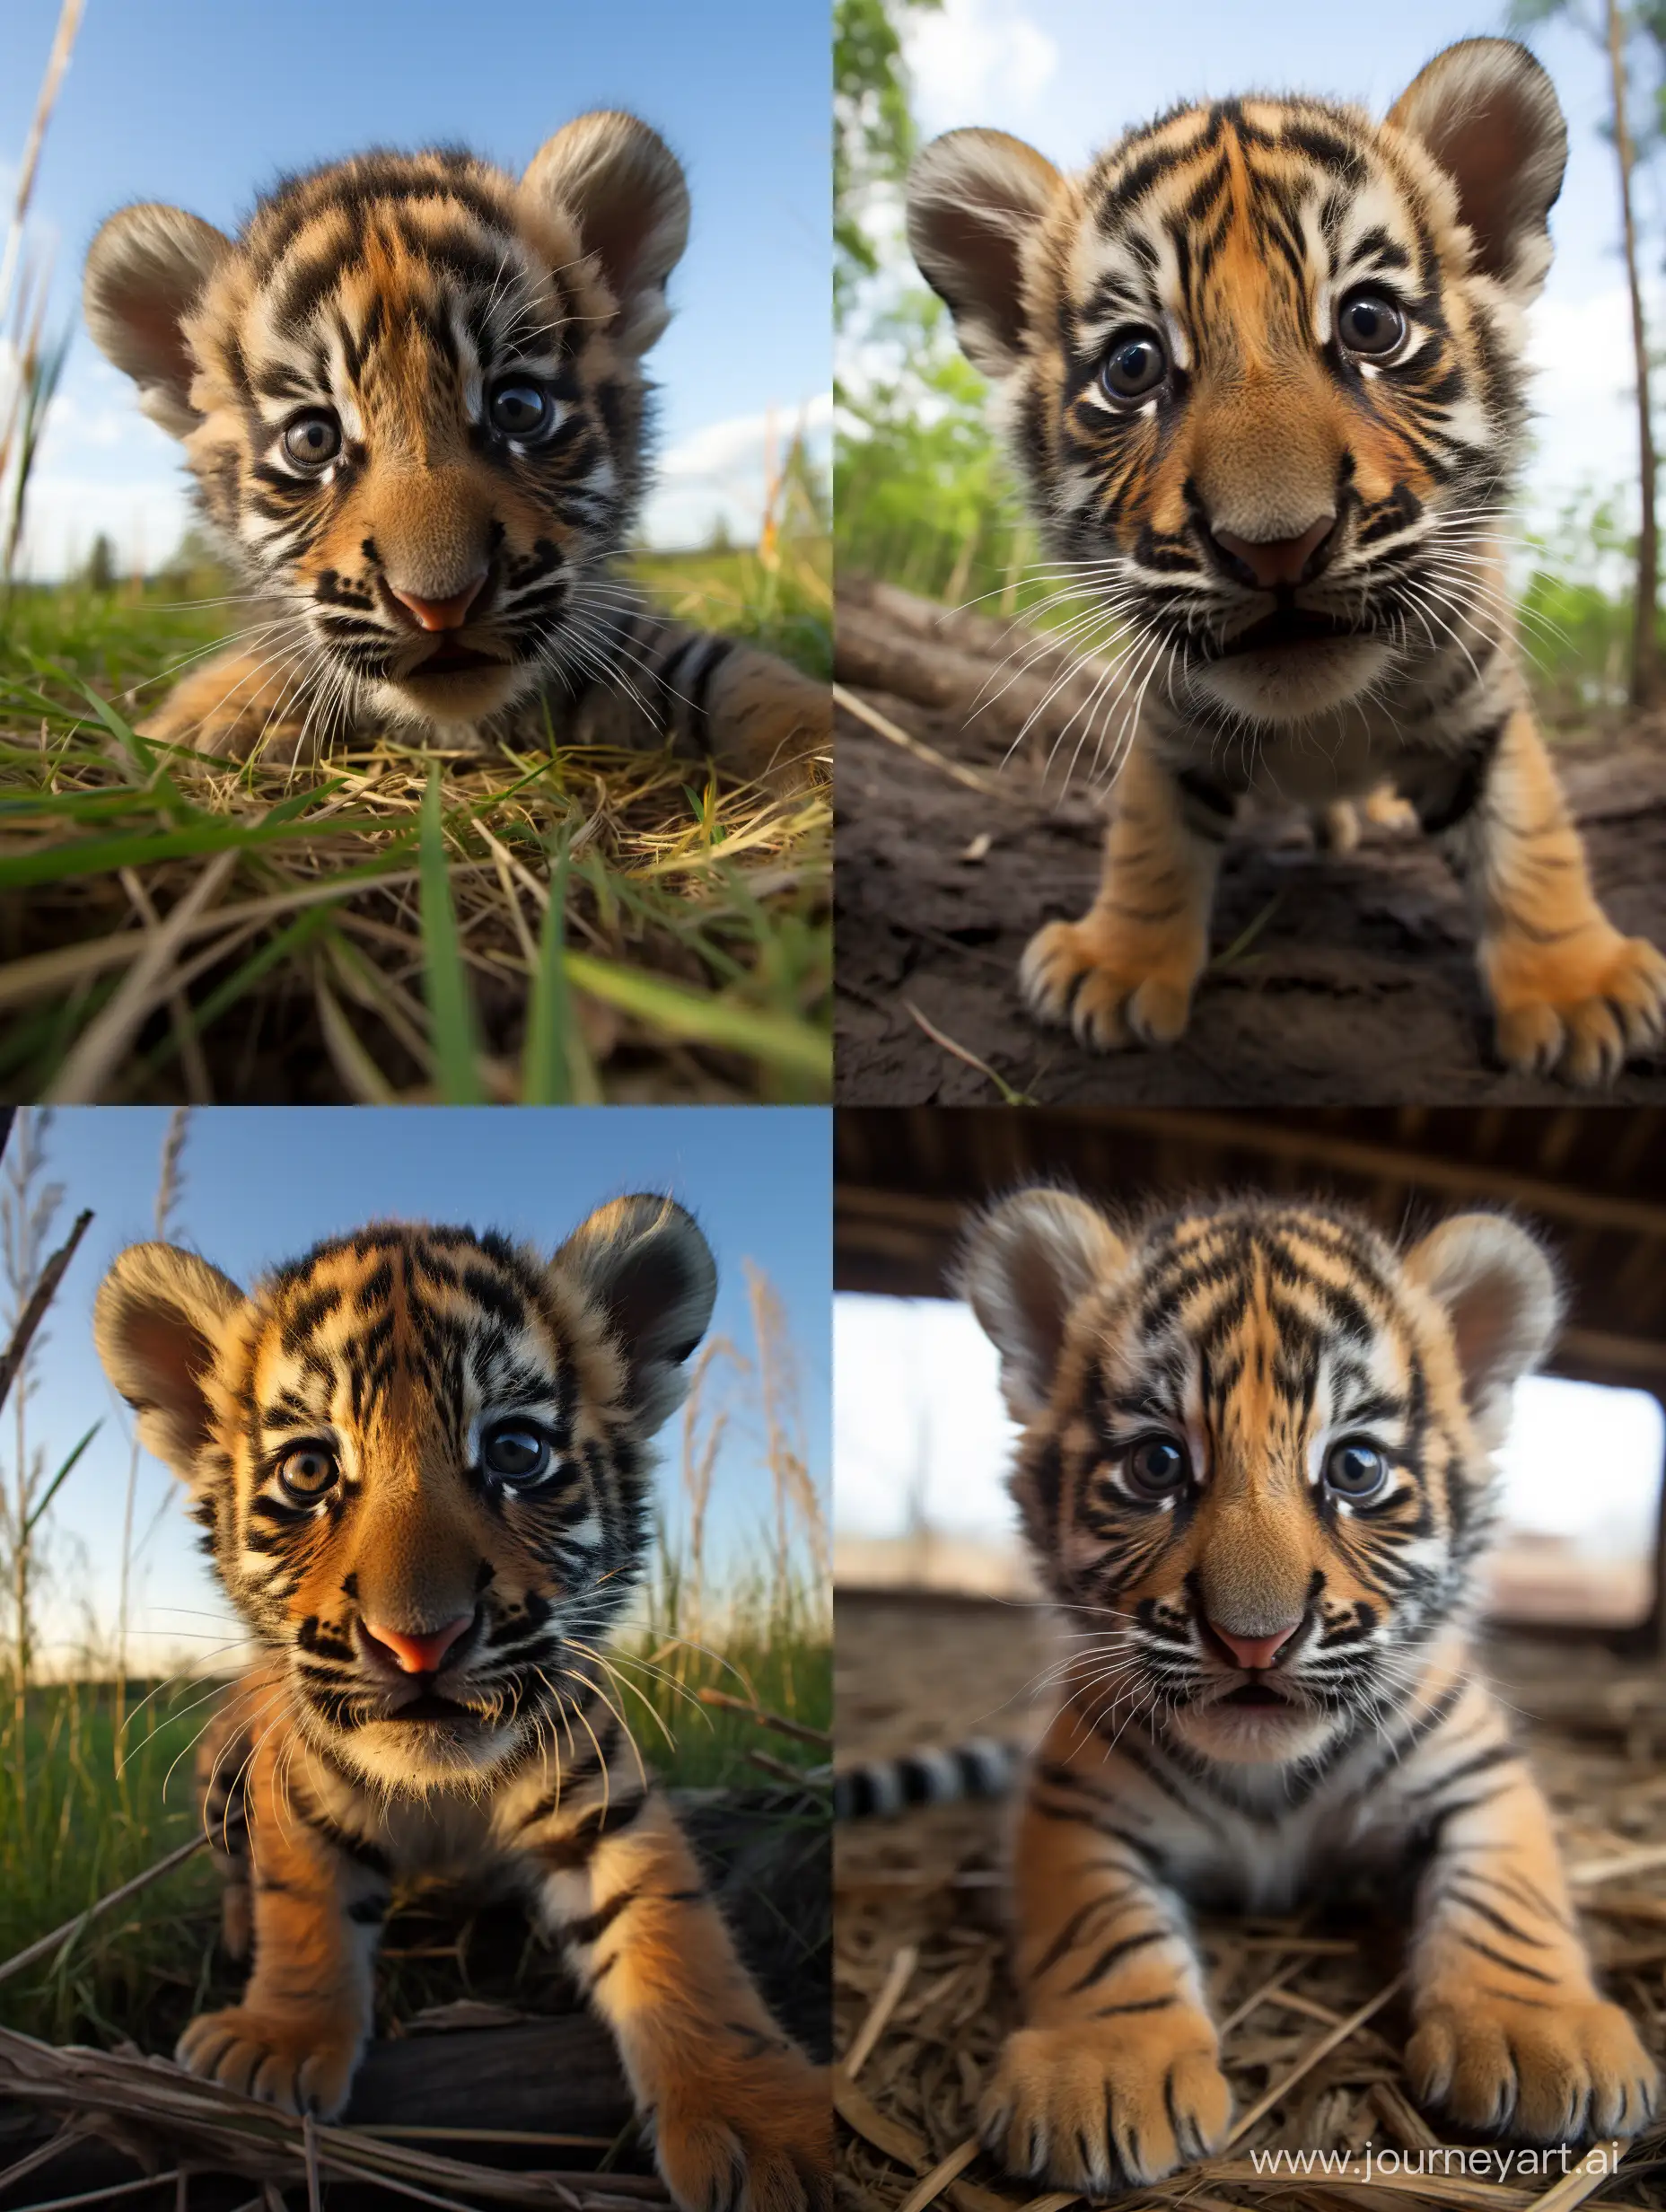 Adorable-Tiger-Cub-in-Festive-Snowy-Setting